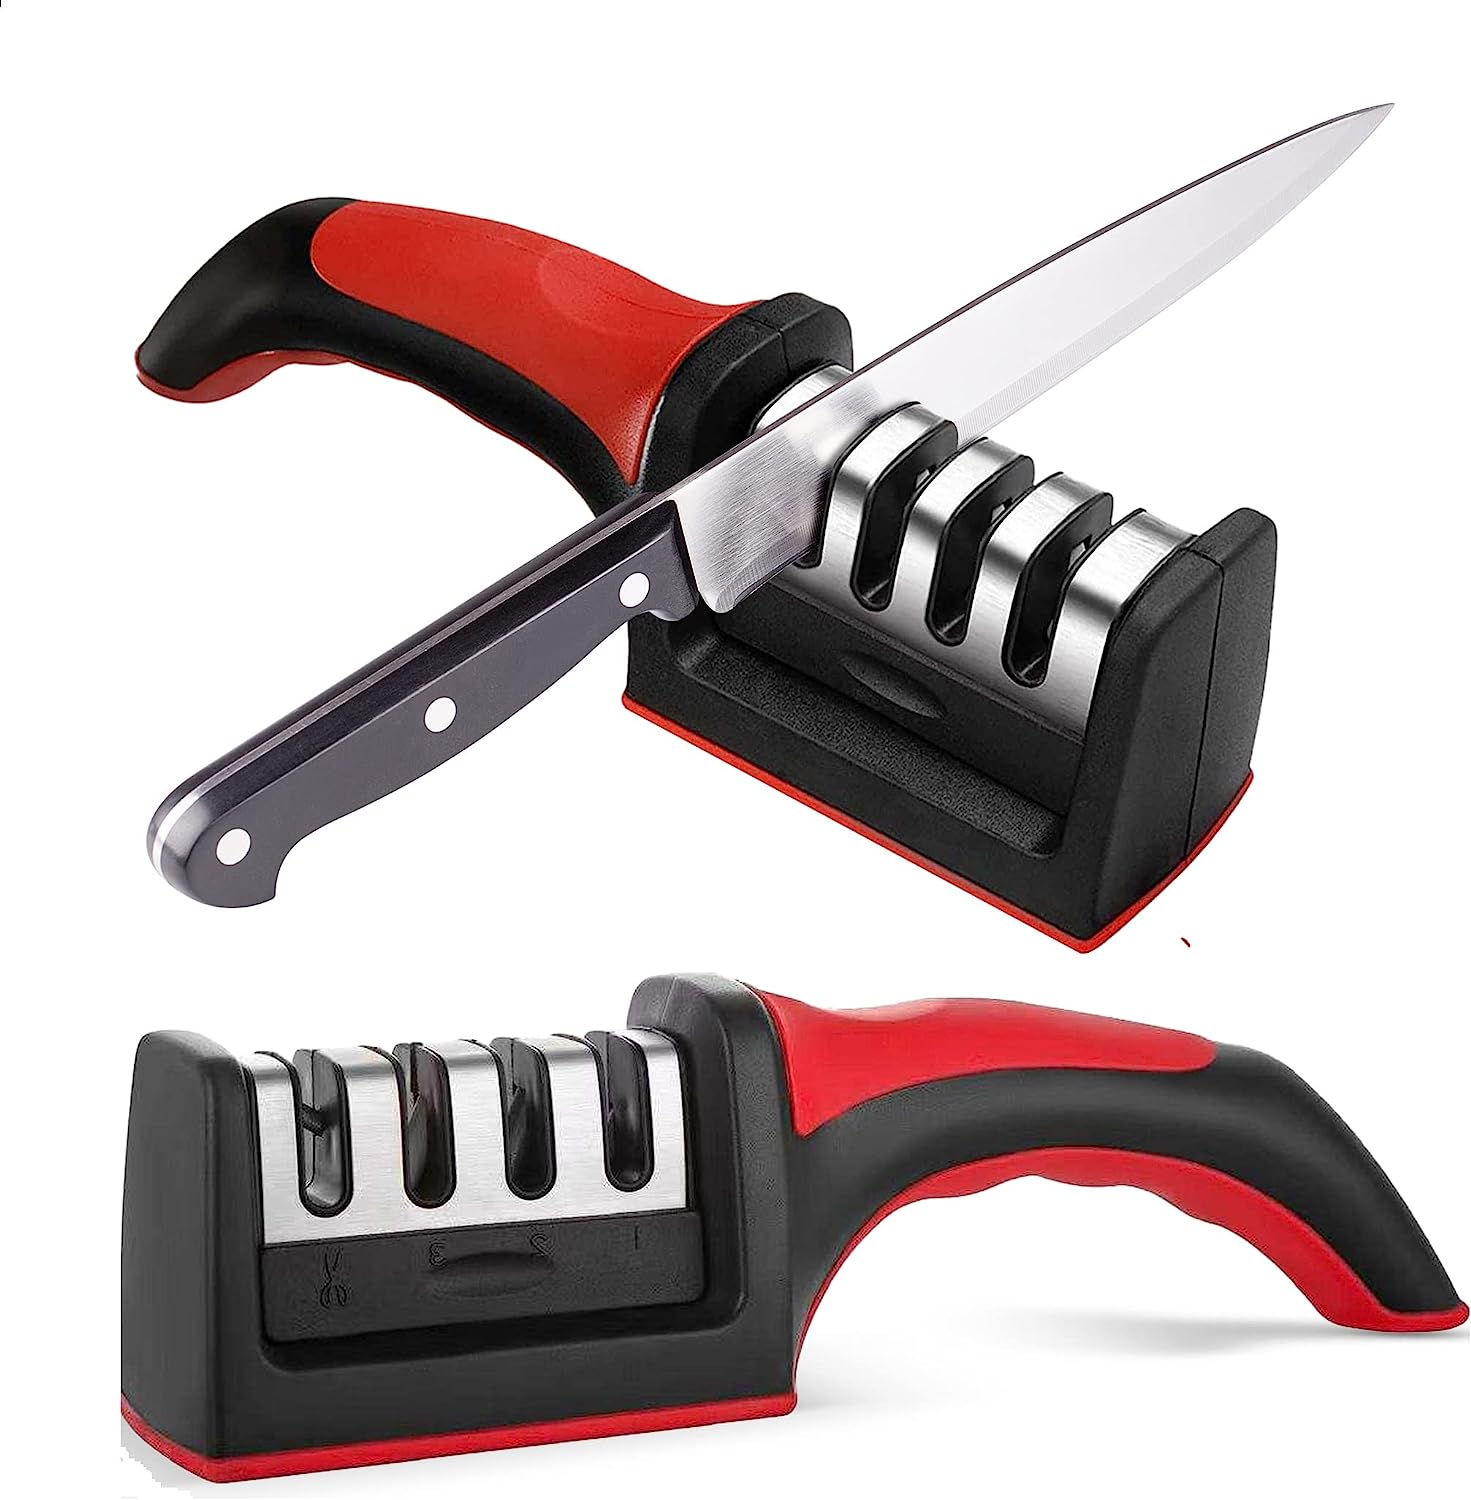 SHARPAL 103N All-in-1 Knife Garden Tool Multi-Sharpener for Lawn Mower  Blade, Axe, Hatchet, Machete, Pruner, Hedge Shears, Scissors